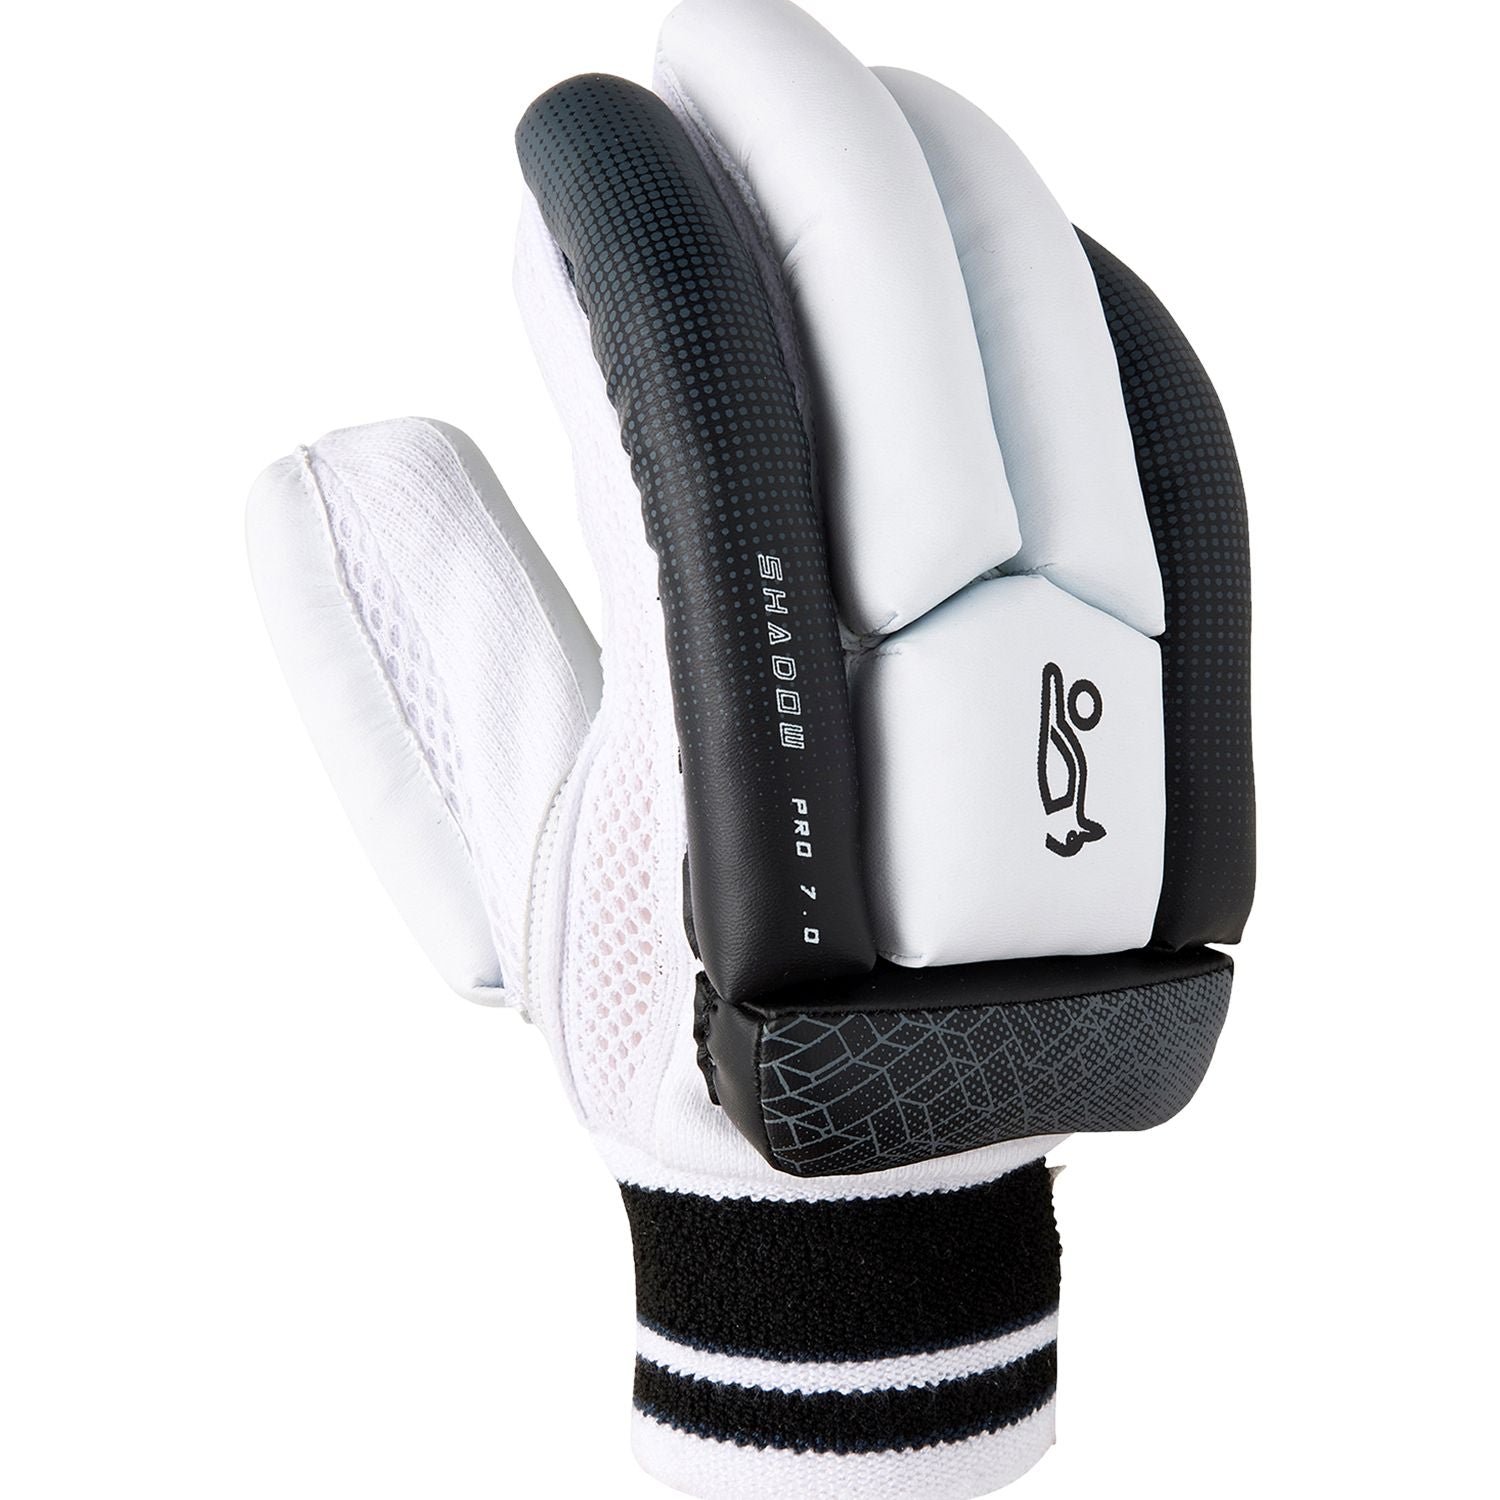 Kookaburra Shadow Pro 7.0 Cricket Batting Gloves